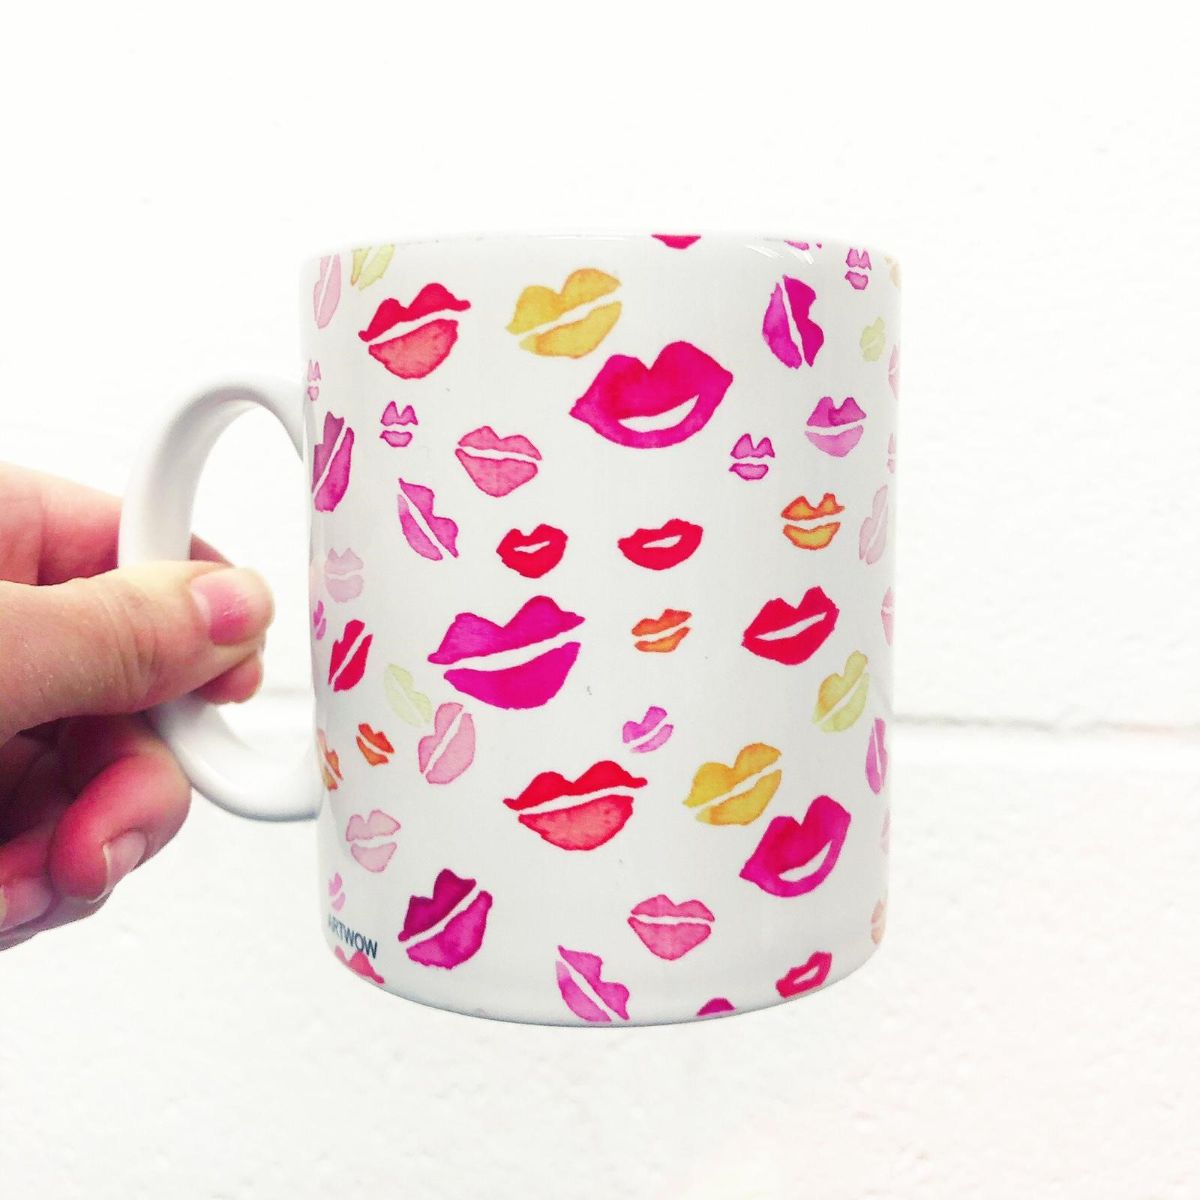 Hot Lips mug by Michelle Walker